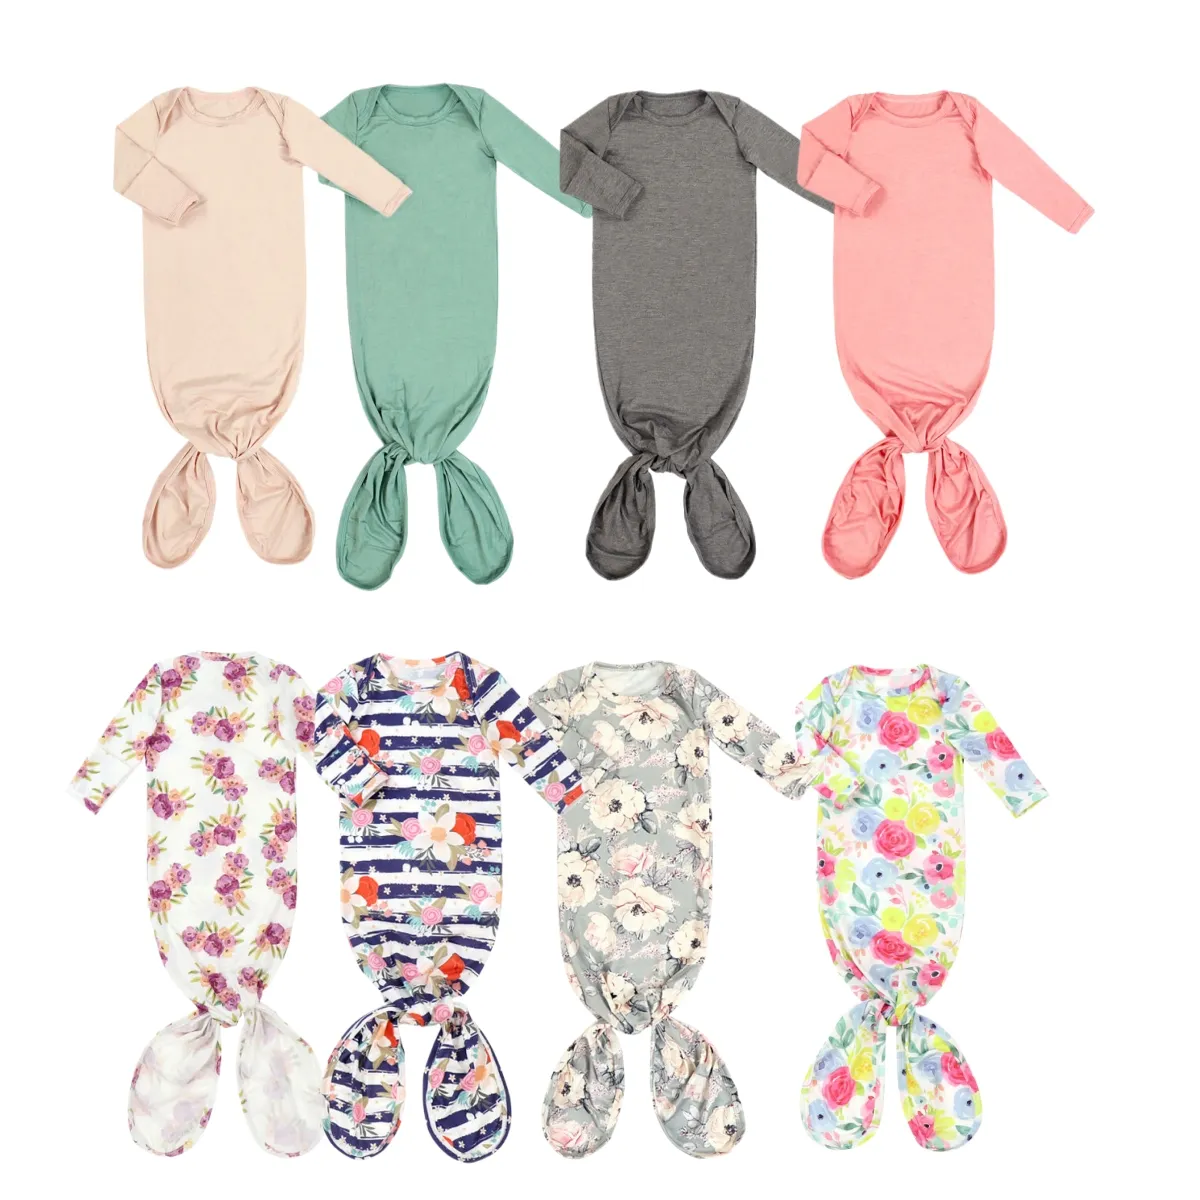 Venta al por mayor de fábrica de manga larga suave lindo estampado saco de dormir batas de dormir ropa de dormir para bebés recién nacidos niñas bebés niños